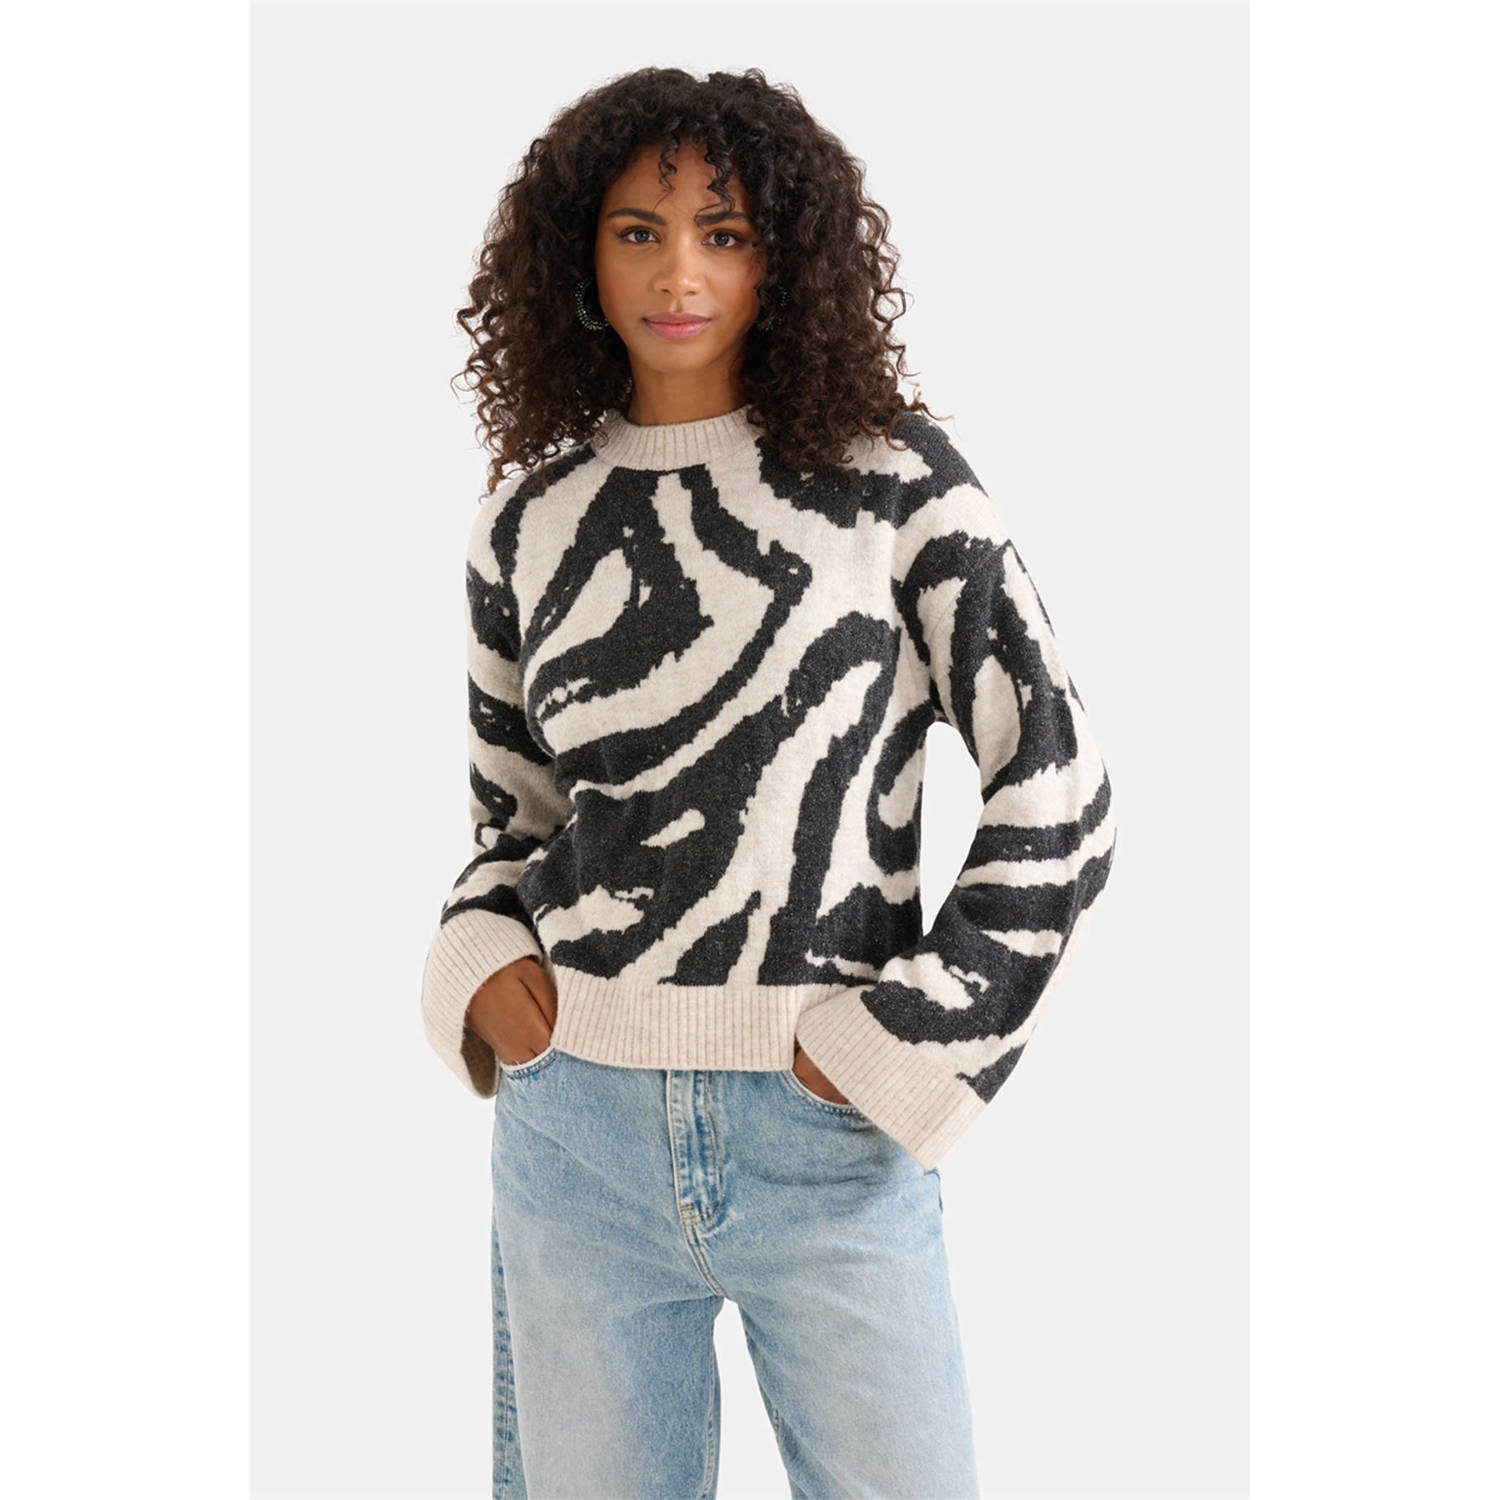 Shoeby trui met wol en zebraprint zwart wit